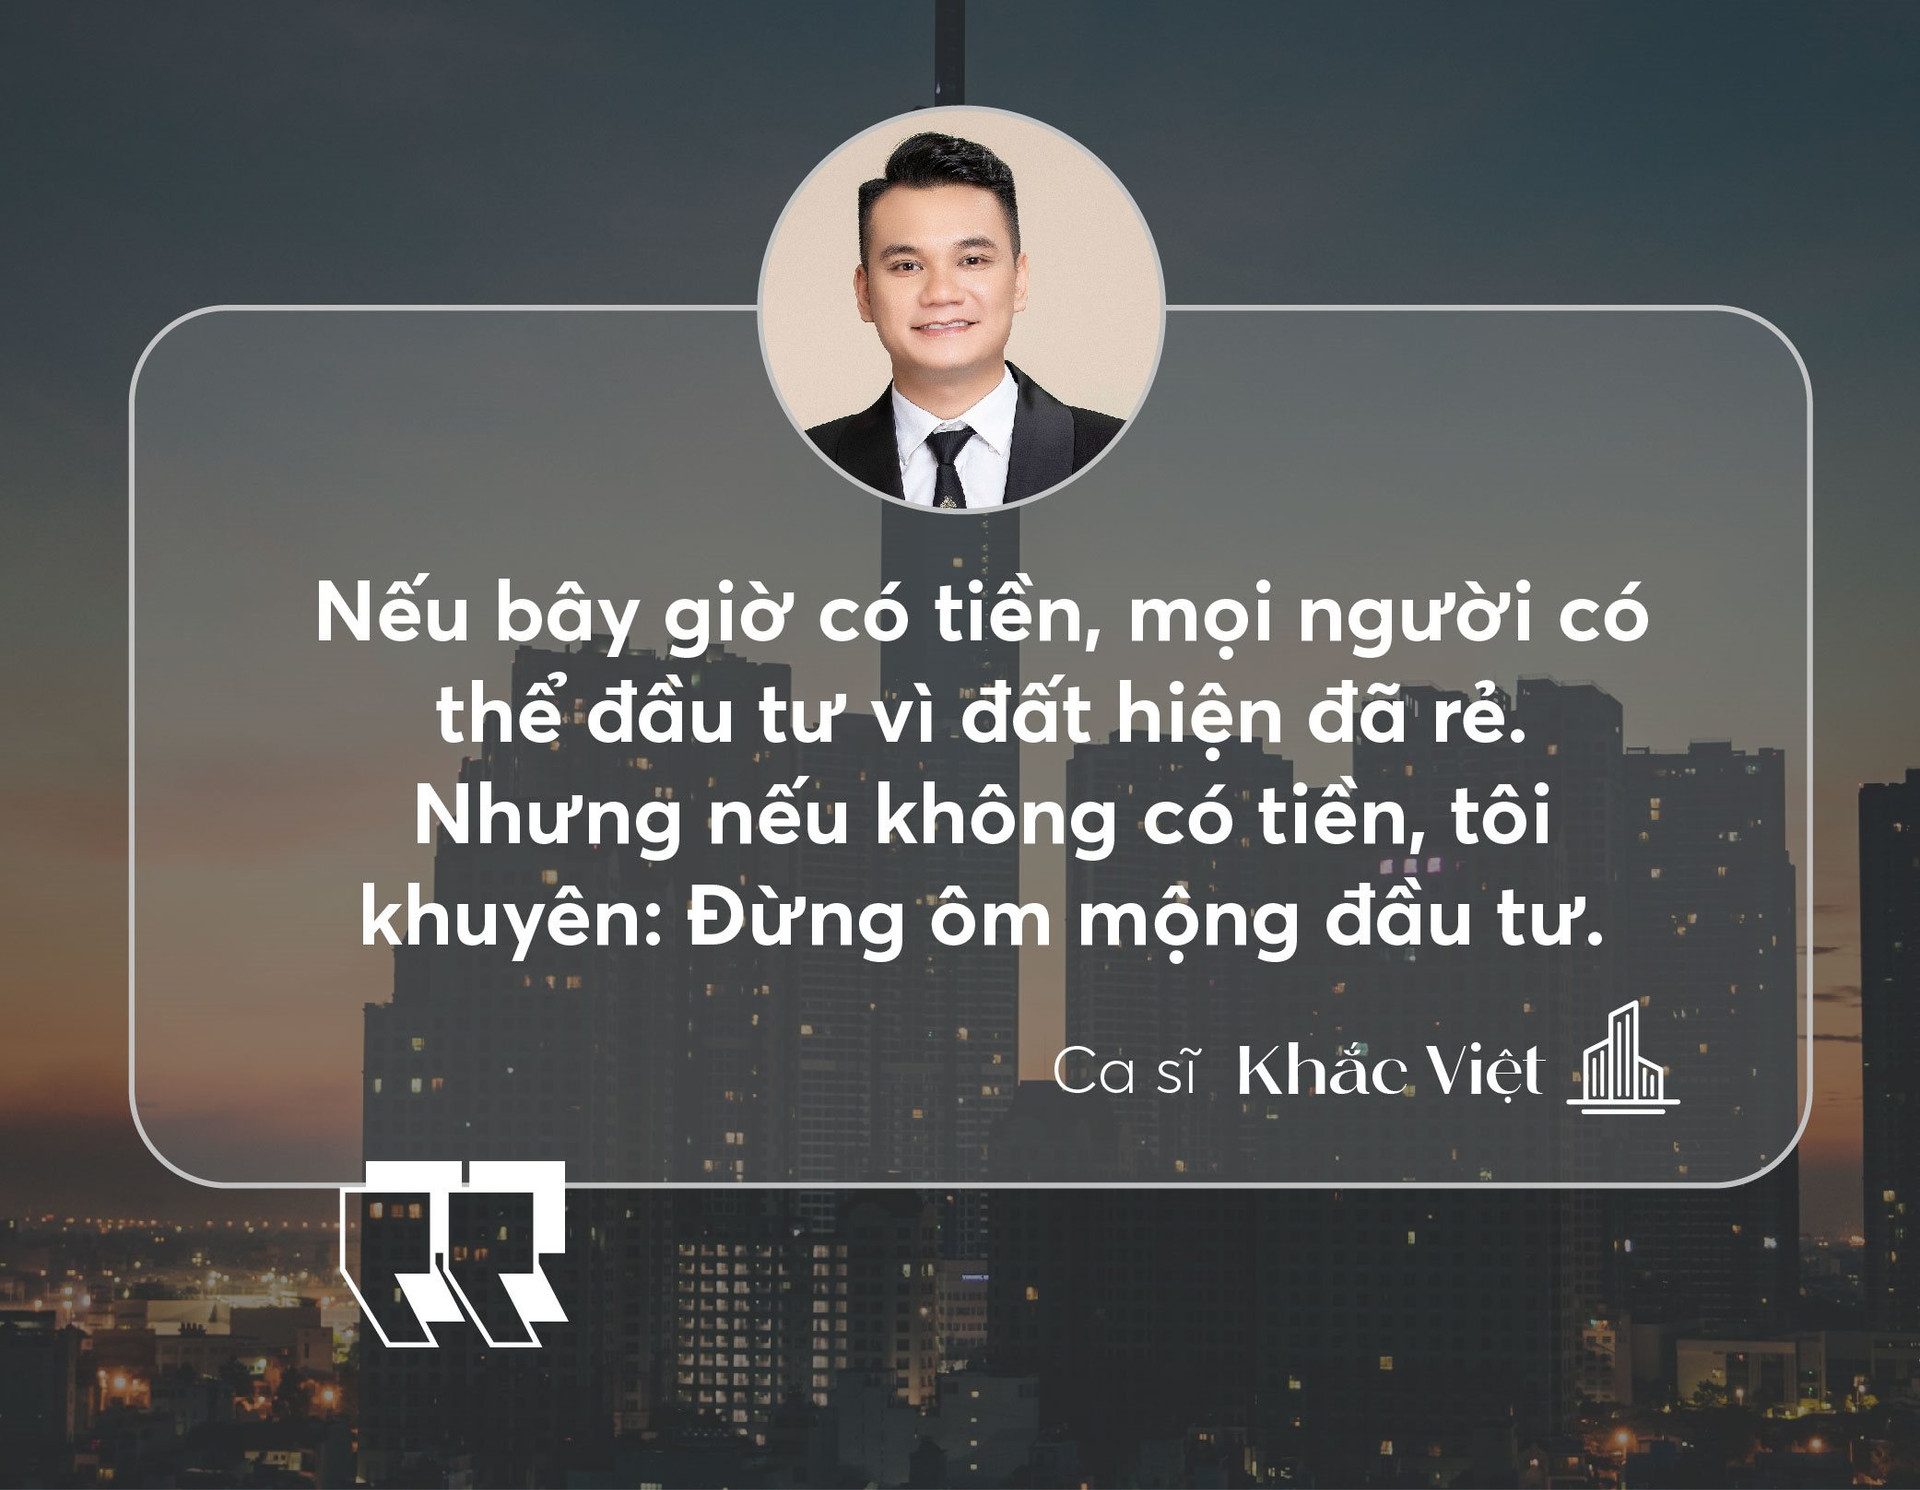 Ca sĩ Khắc Việt: “Khi thị trường bất động sản sôi động, anh đầu tư thắng, anh nói gì cũng sẽ hay” - Ảnh 7.